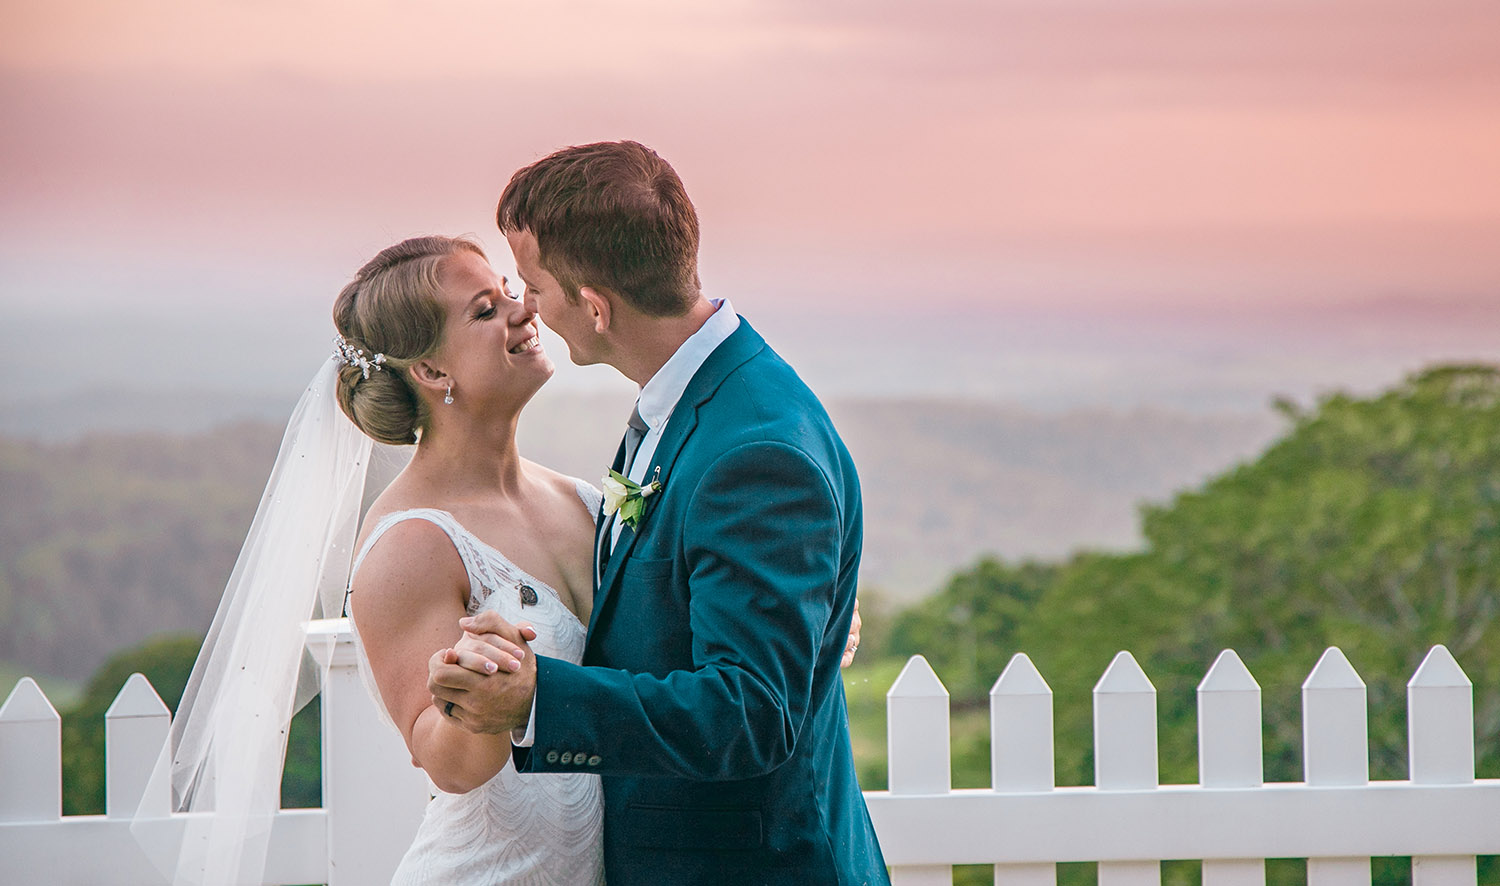 Wedding Photography - Couple at sunset